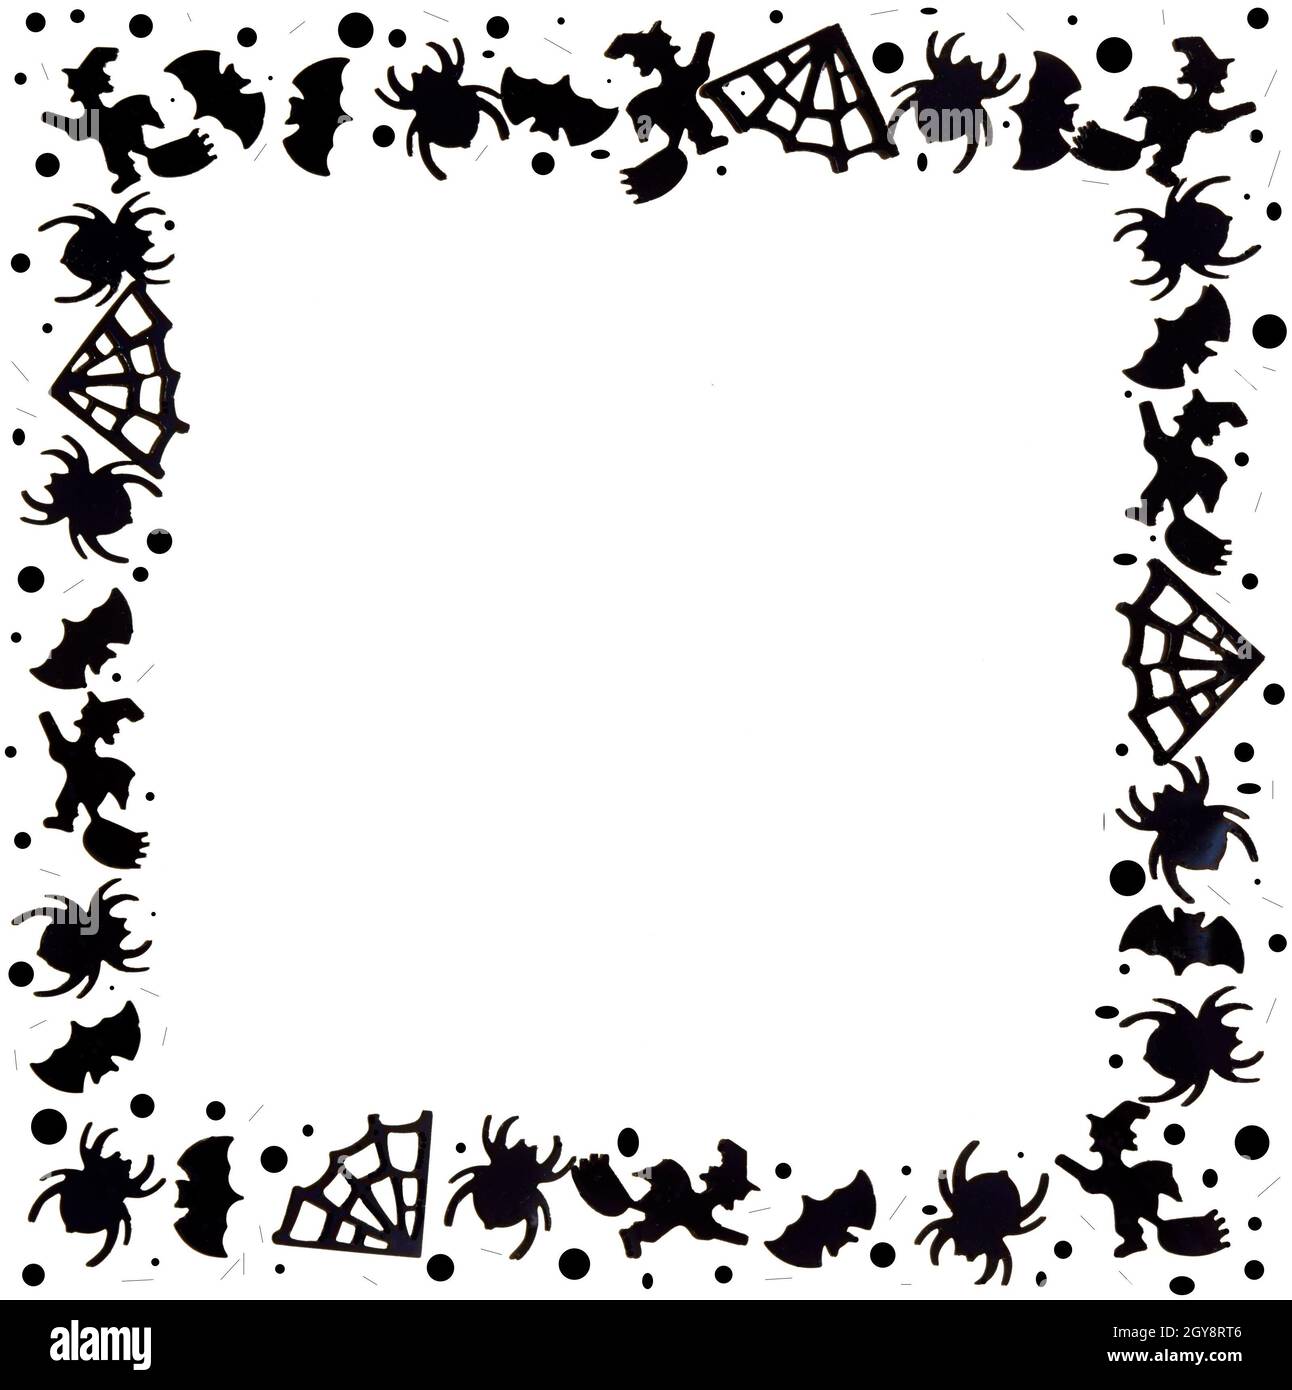 Schwarz-weißer Hintergrund für Halloween. Ein Rahmen aus einfachen Formen mit Platz für Text. Schwarze Spinnen, Spinnweben, Fledermäuse, Hexen auf einem Besen, Punkte, Flecken. Stockfoto